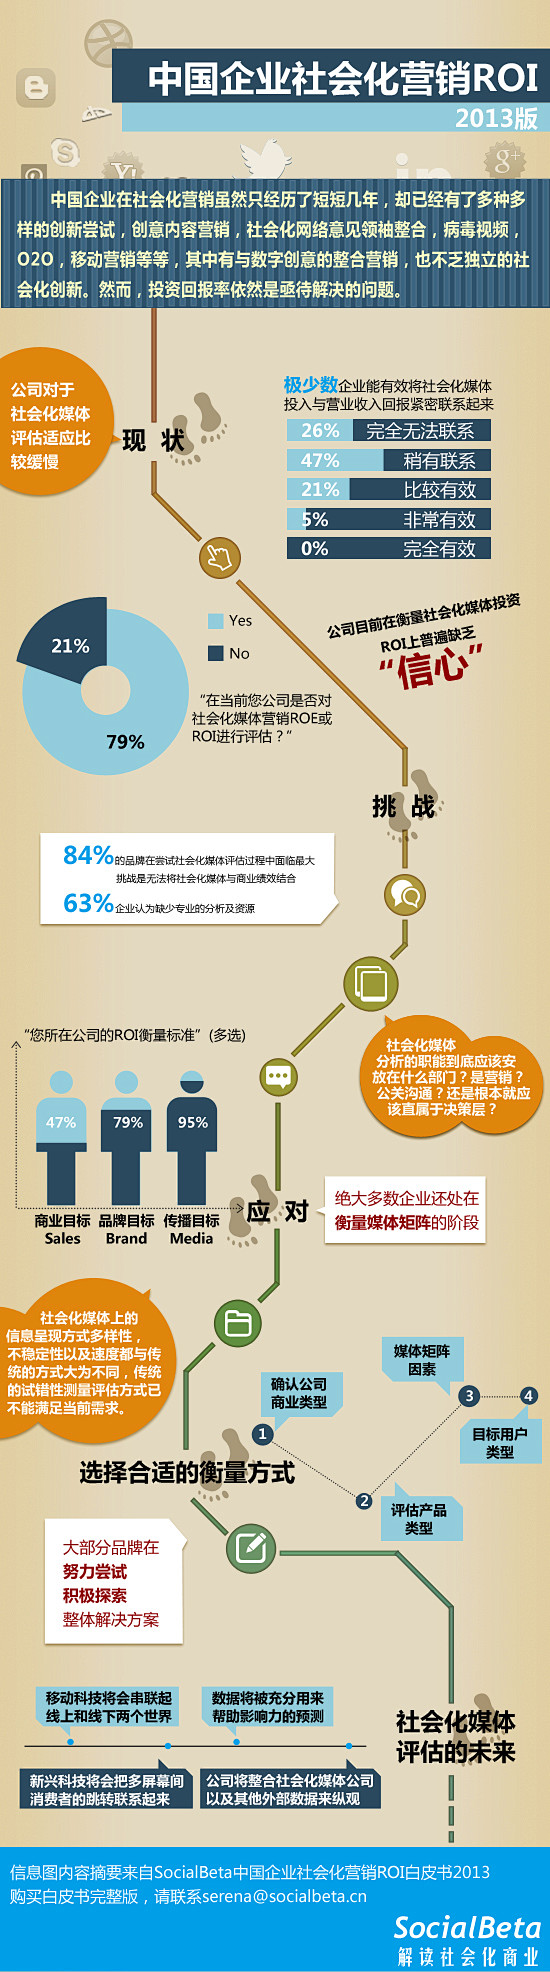 中国企业社会化营销ROI